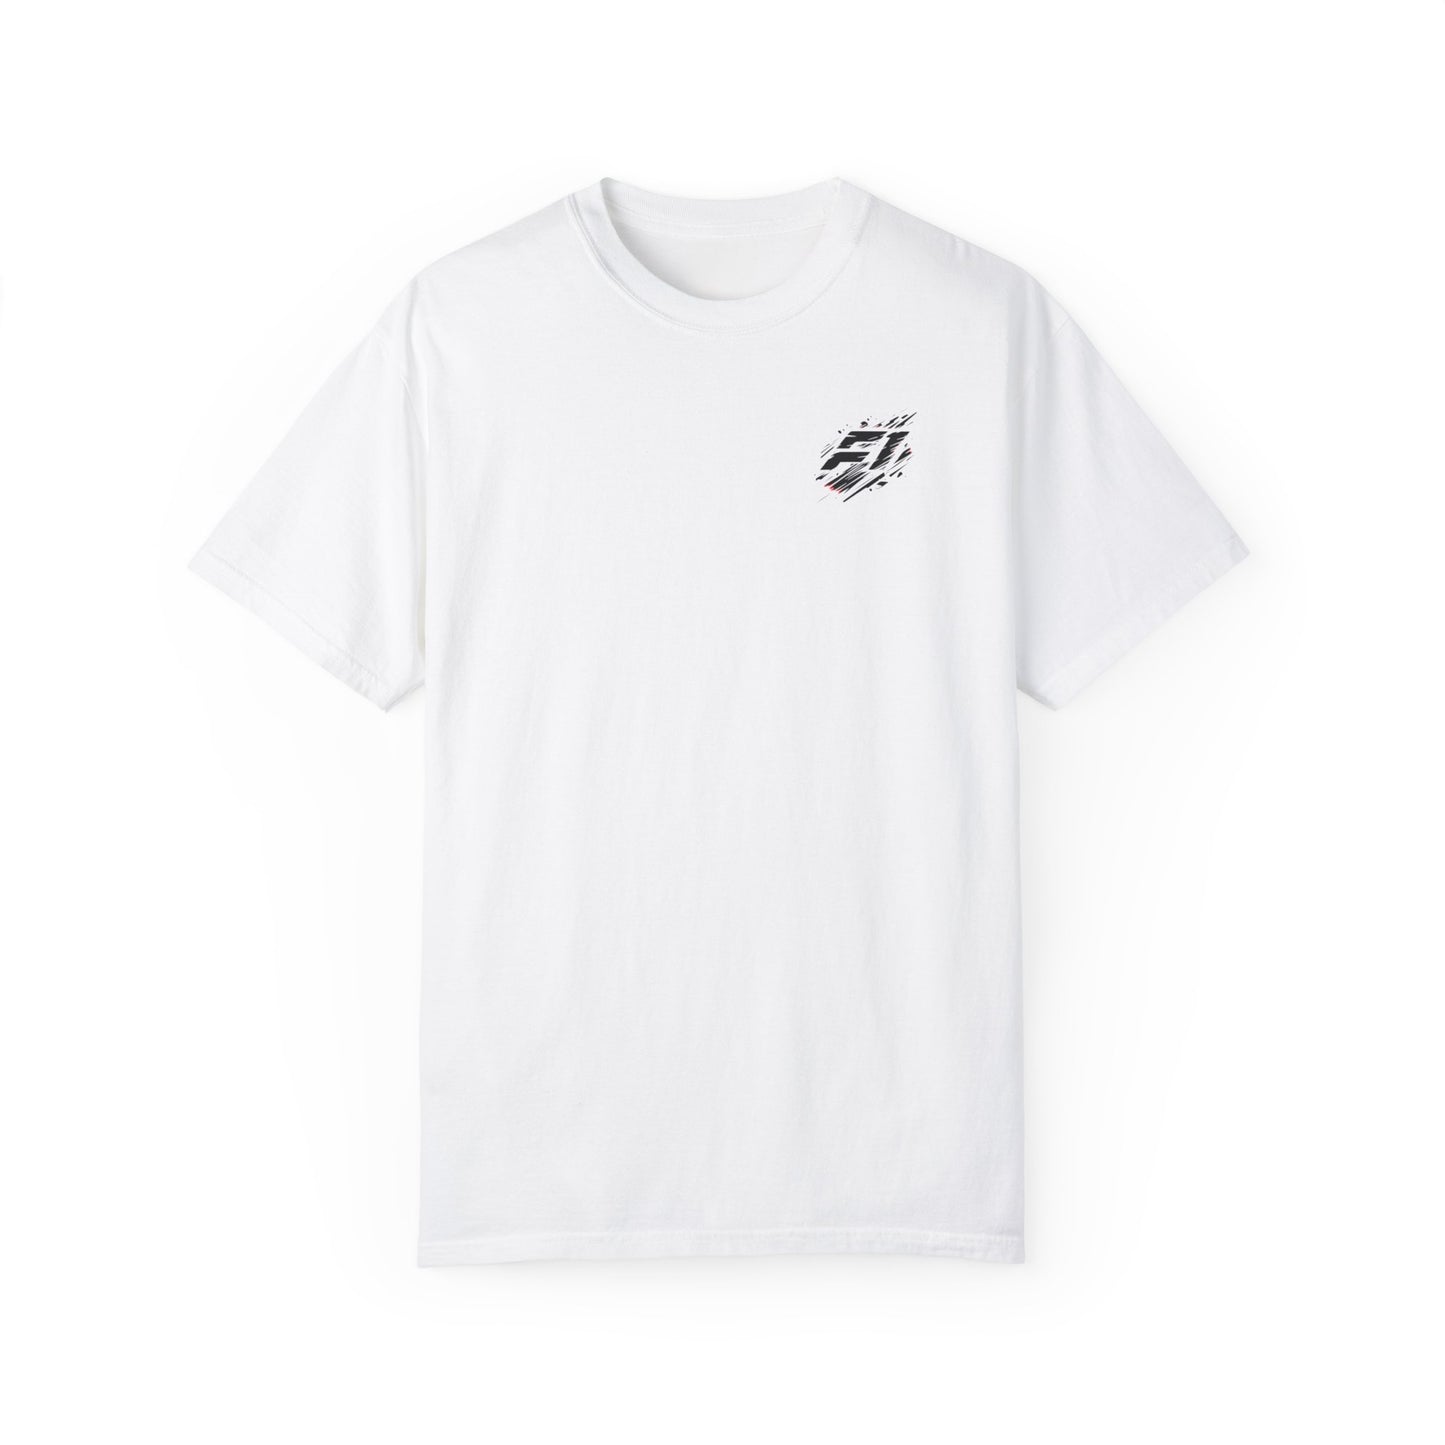 F1 Fan Favorite Unisex T-shirt